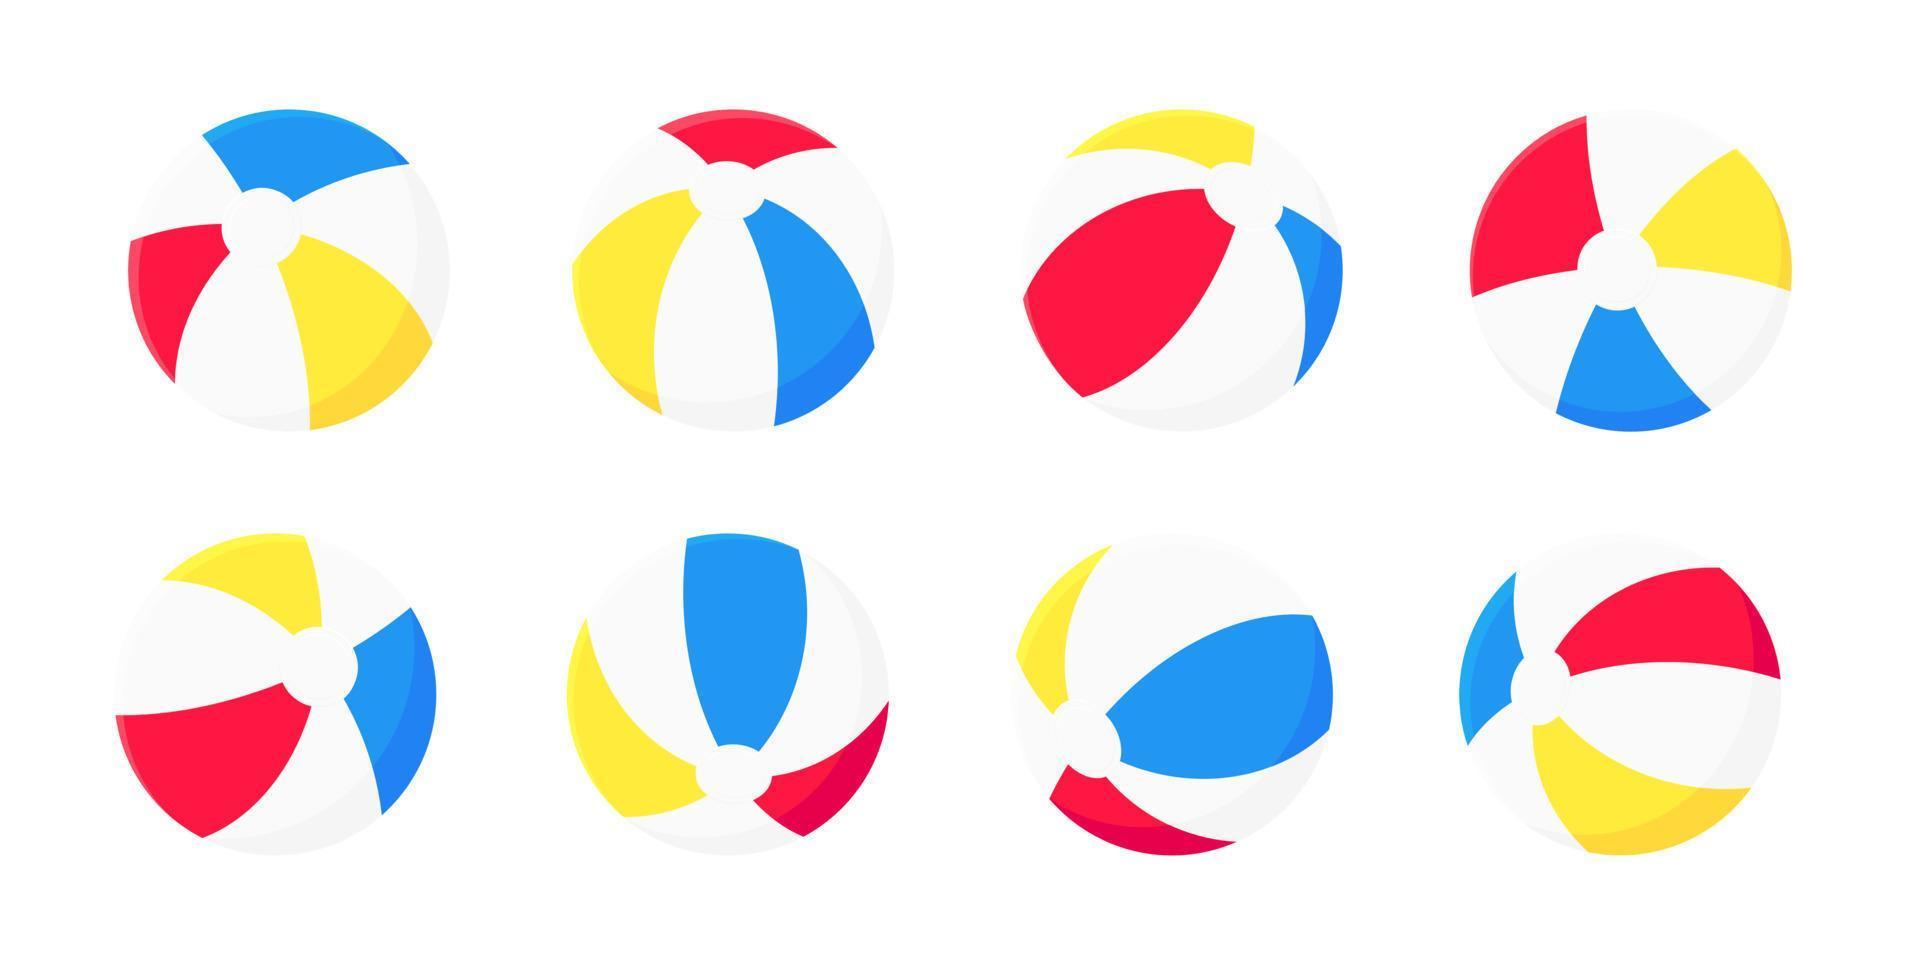 Artdesign-Vektorillustrations-Sammlungssatz des aufblasbaren Wasserballs flachen lokalisiert auf weißem Hintergrund. vektor